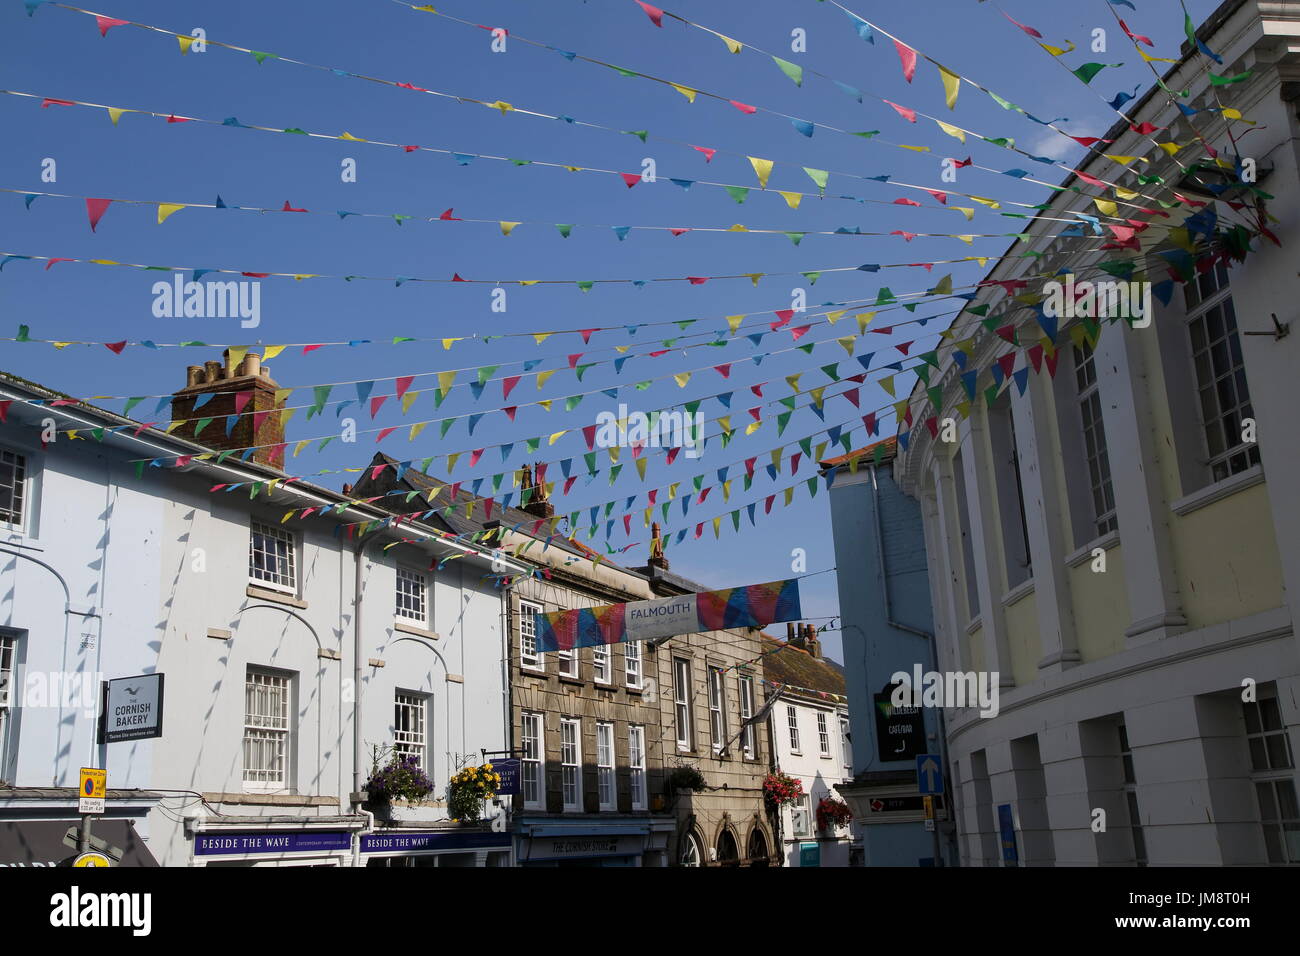 Ammer Fahnen in der Straße der Stadt Zentrum, Falmouth, Cornwall, England, UK Stockfoto